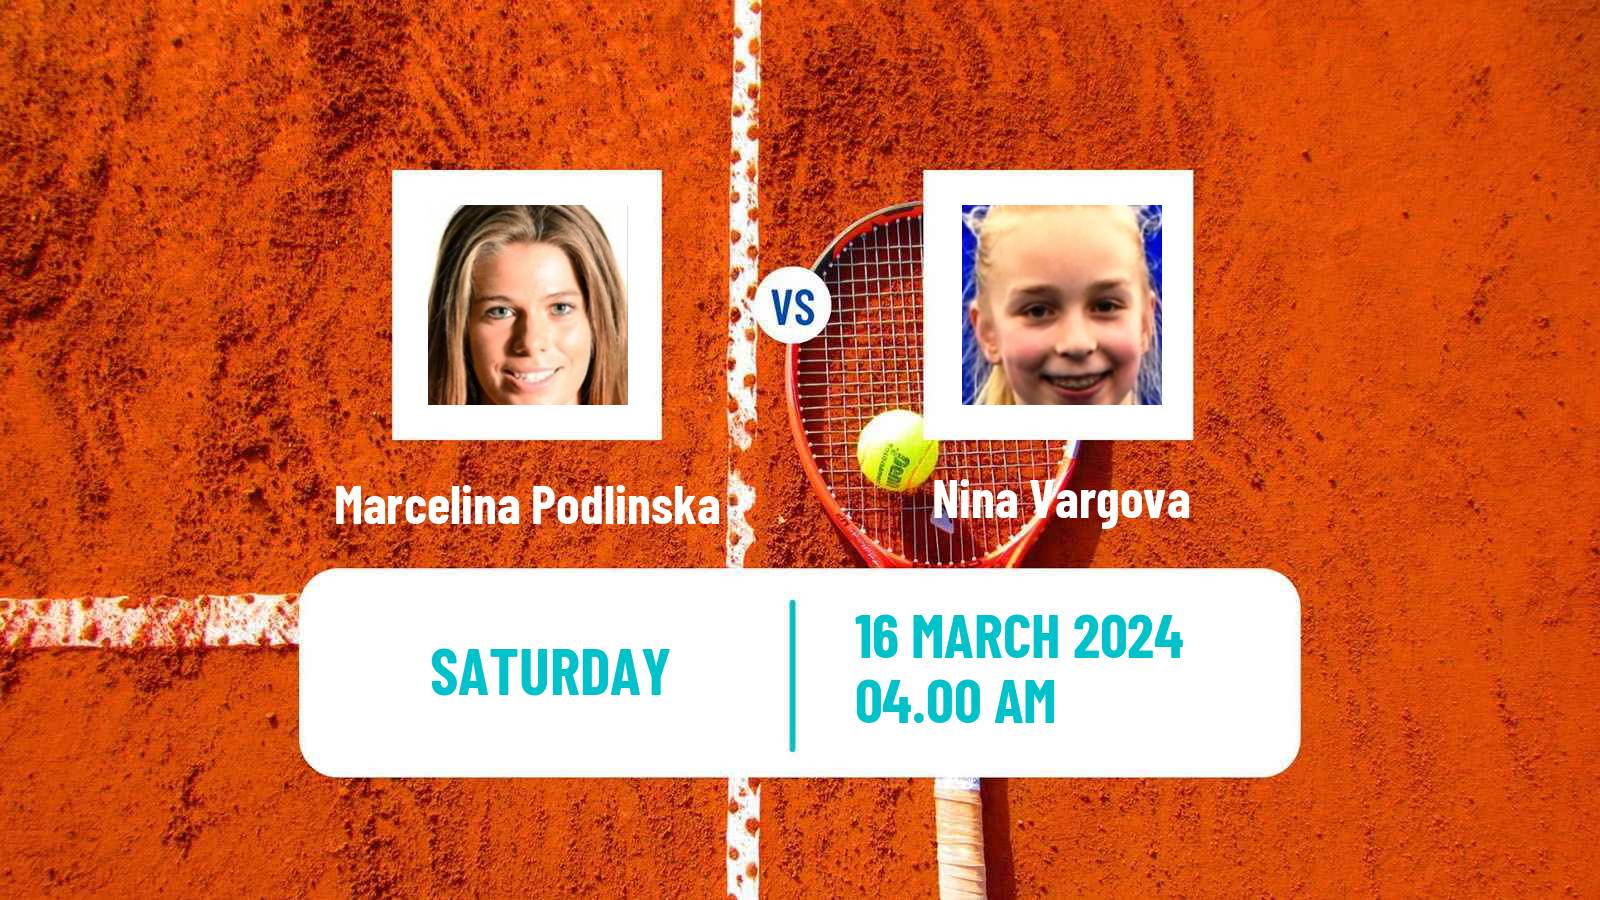 Tennis ITF W15 Heraklion 2 Women Marcelina Podlinska - Nina Vargova